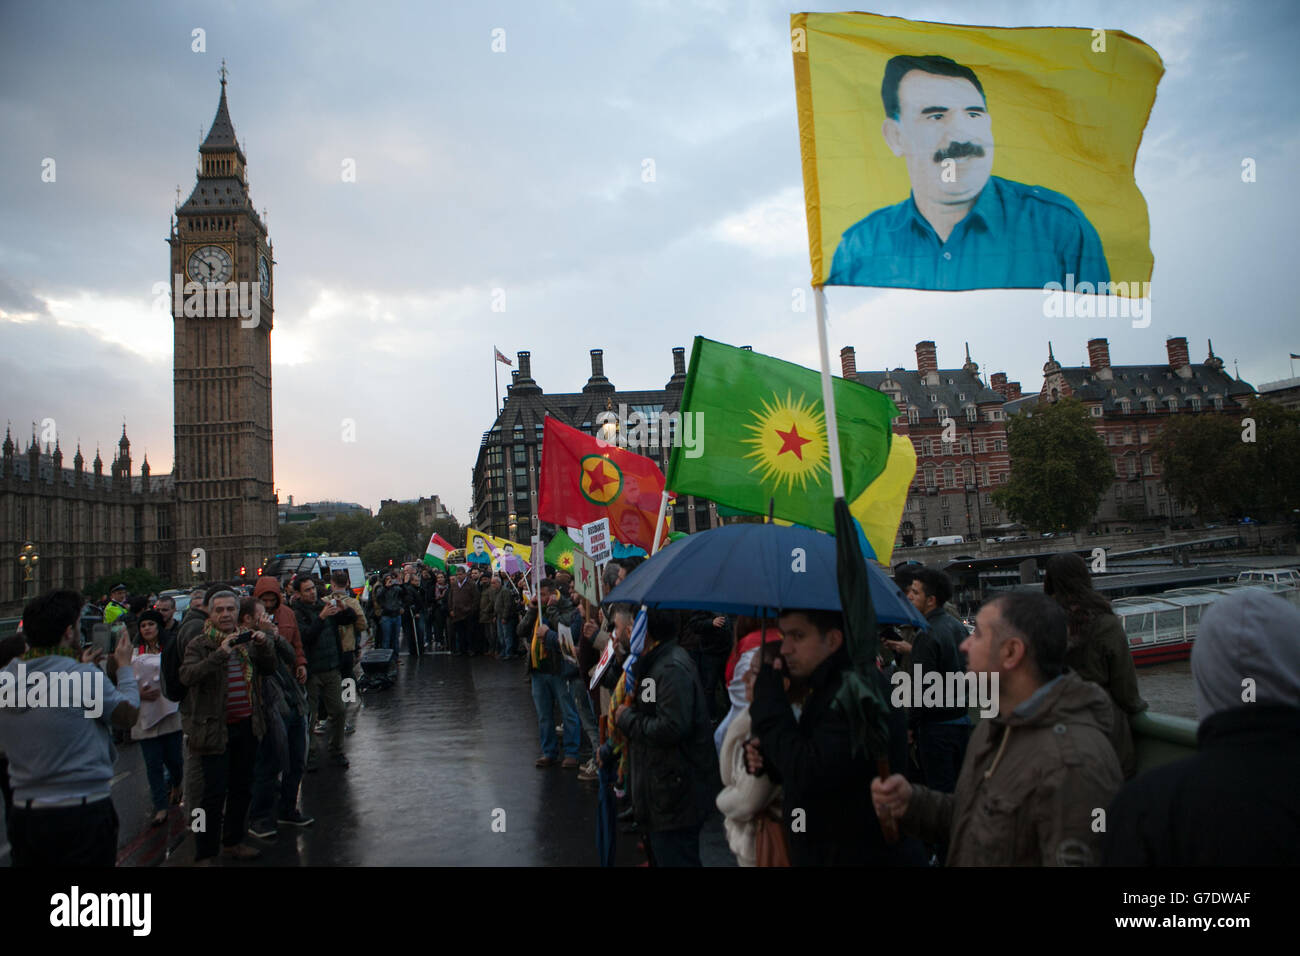 Les gens manifestant sur le pont de Westminster dans le centre de Londres avec des drapeaux et des bannières kurdes contre la menace de l'EI envers les minorités kurdes et autres en Syrie et en Irak. Banque D'Images